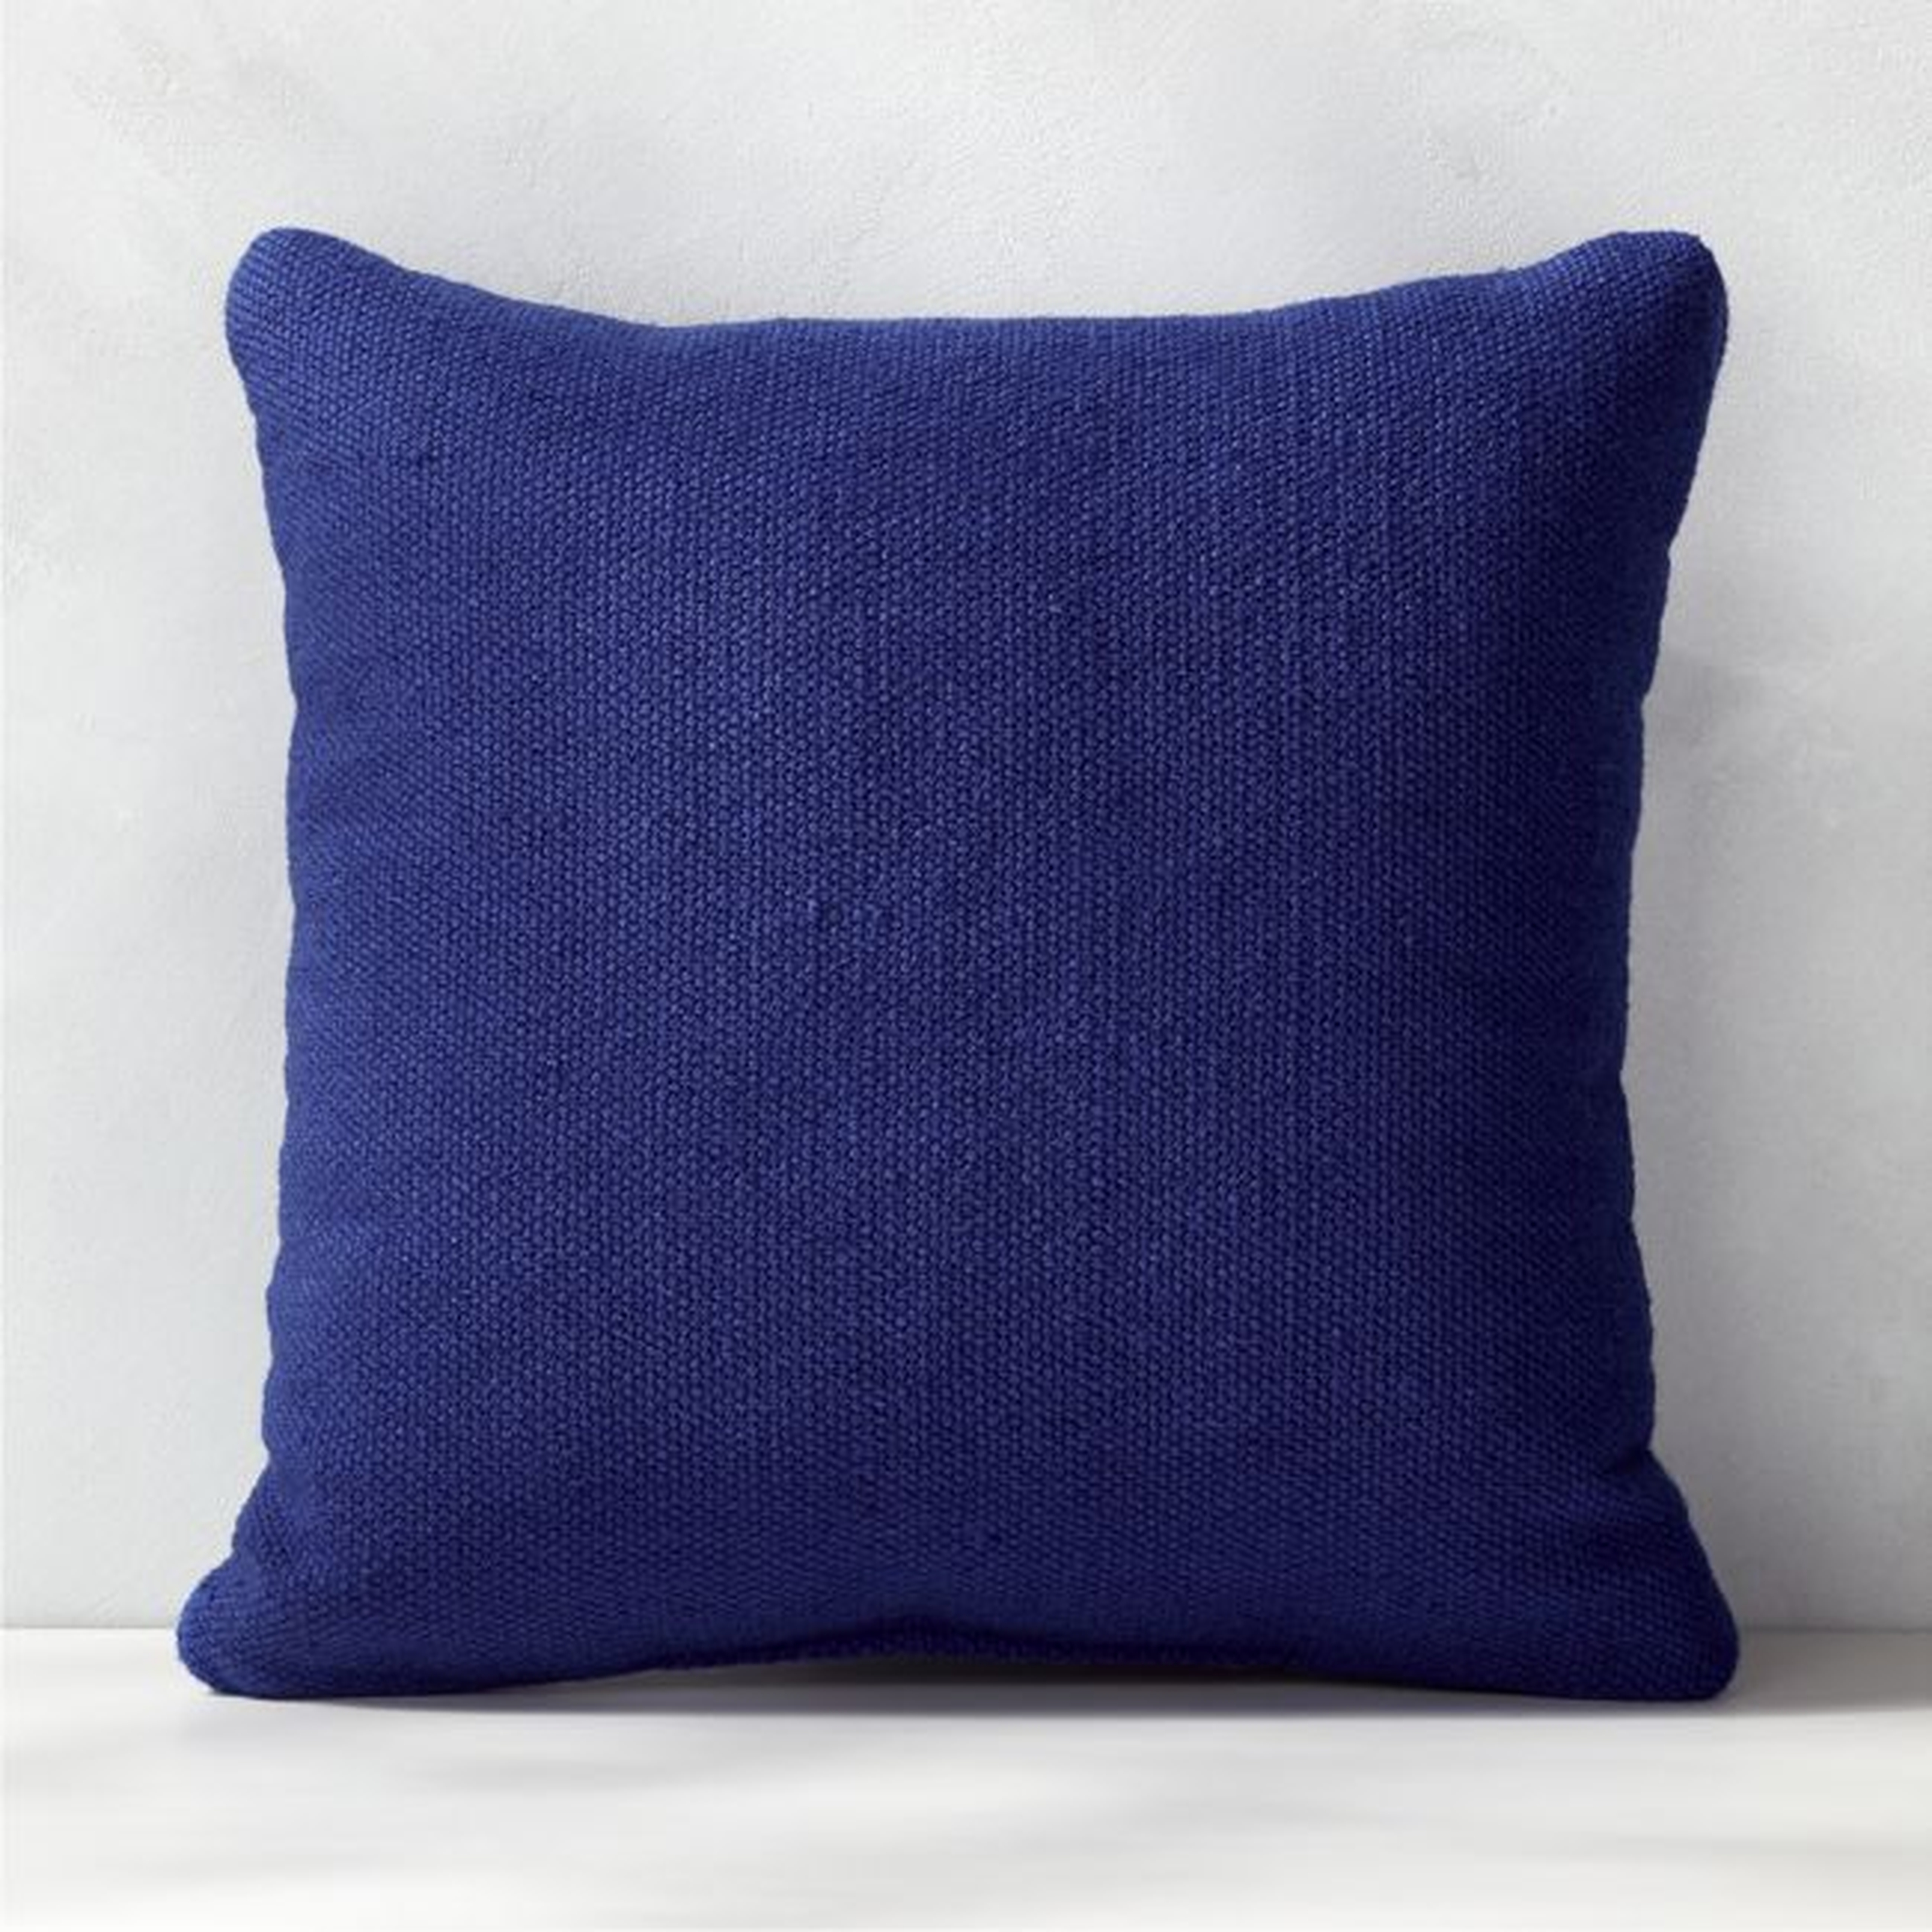 20" Flat-Weave Cobalt Blue Outdoor Pillow - CB2